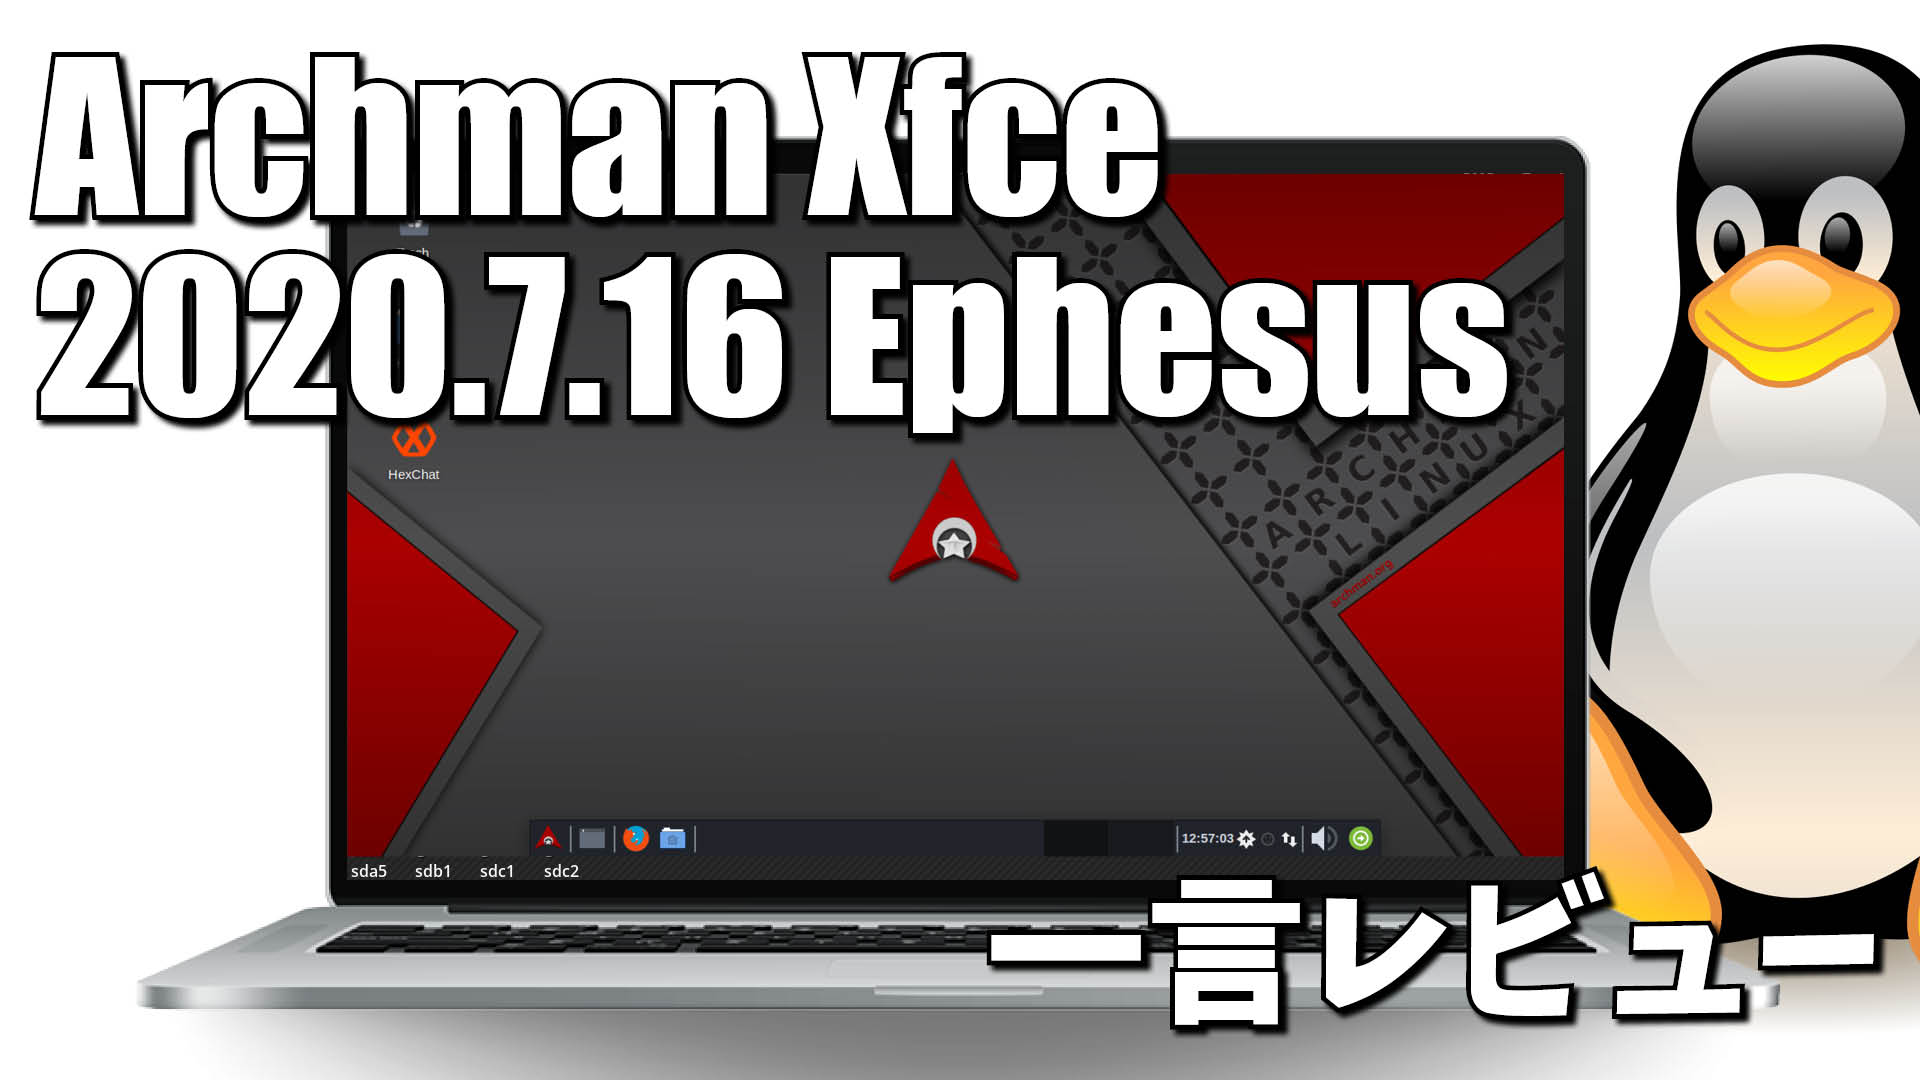 一言レビュー: Archman Xfce 2020.7.16 Ephesus